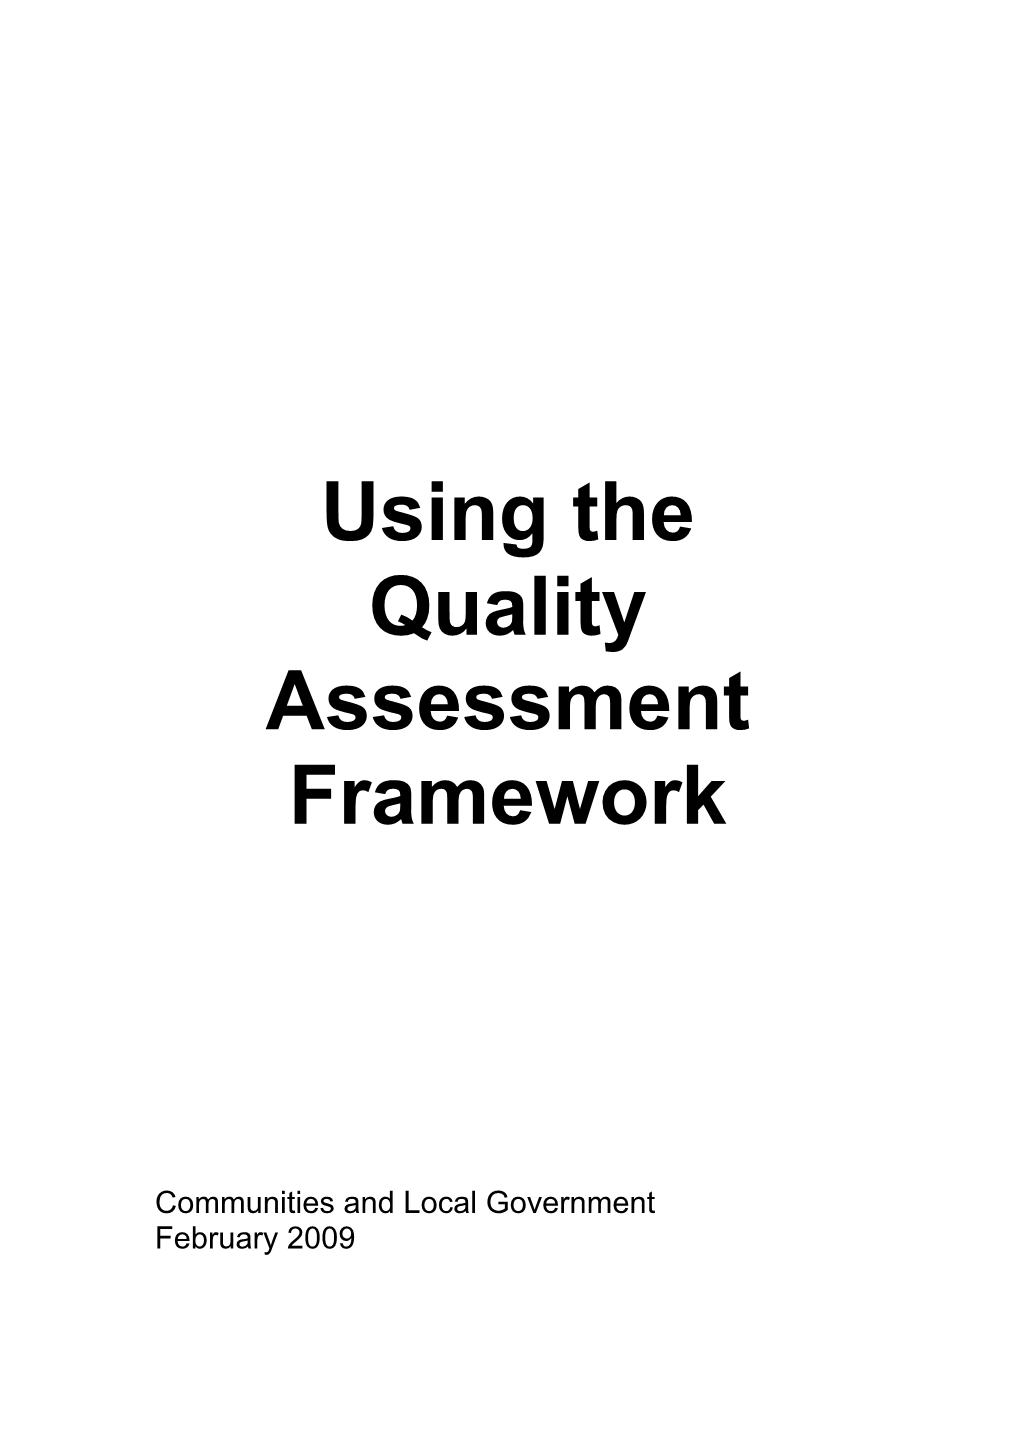 Quality Assessment Framework